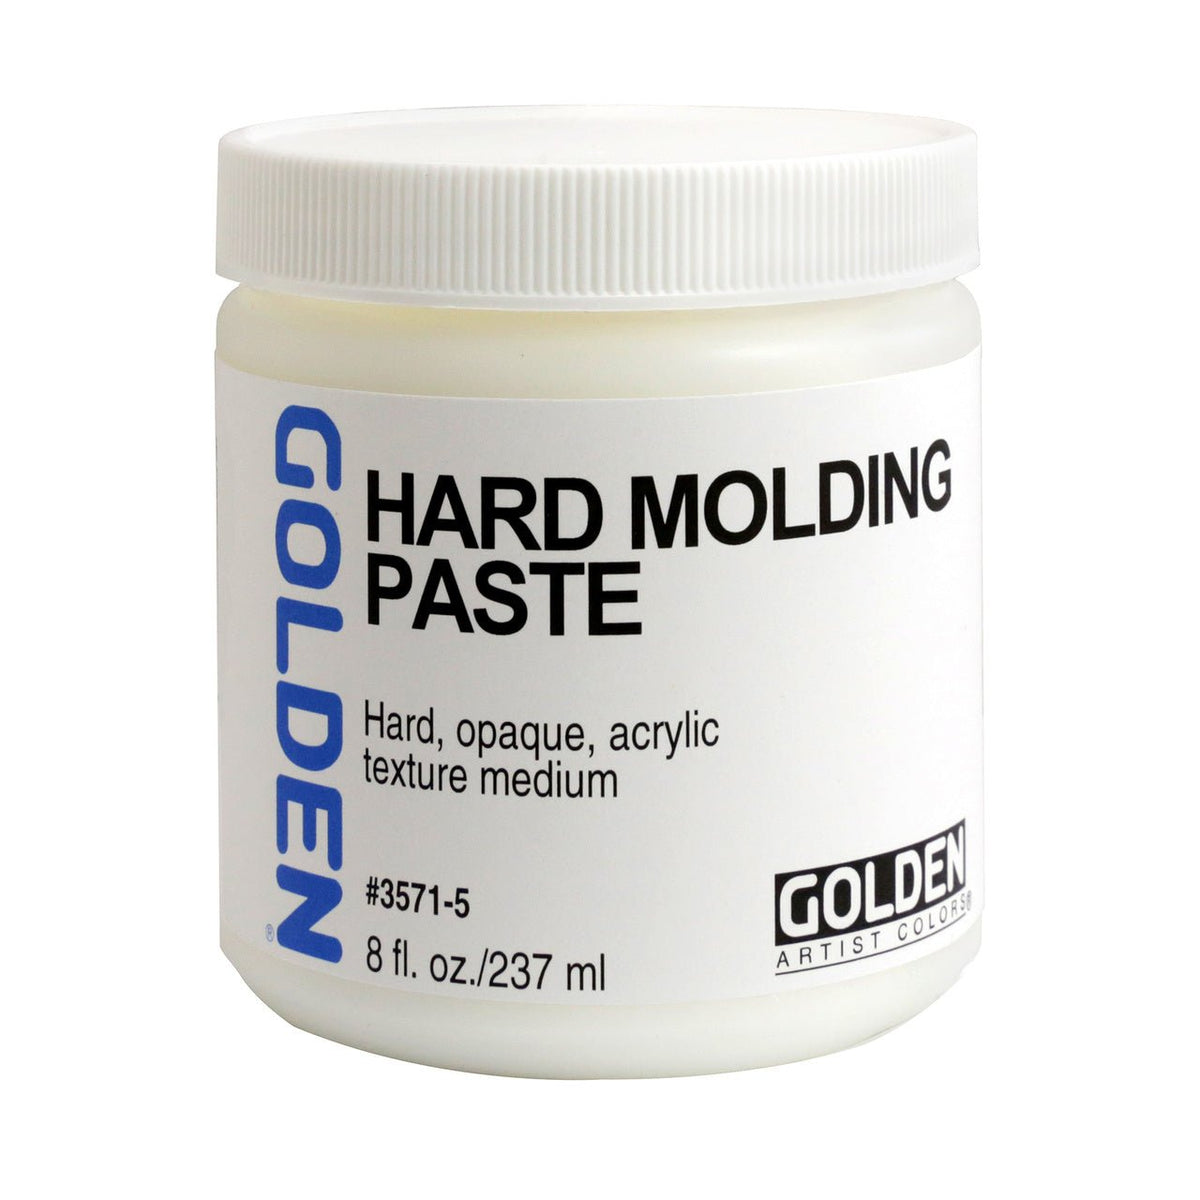 Golden Hard Molding Paste 8 oz - merriartist.com